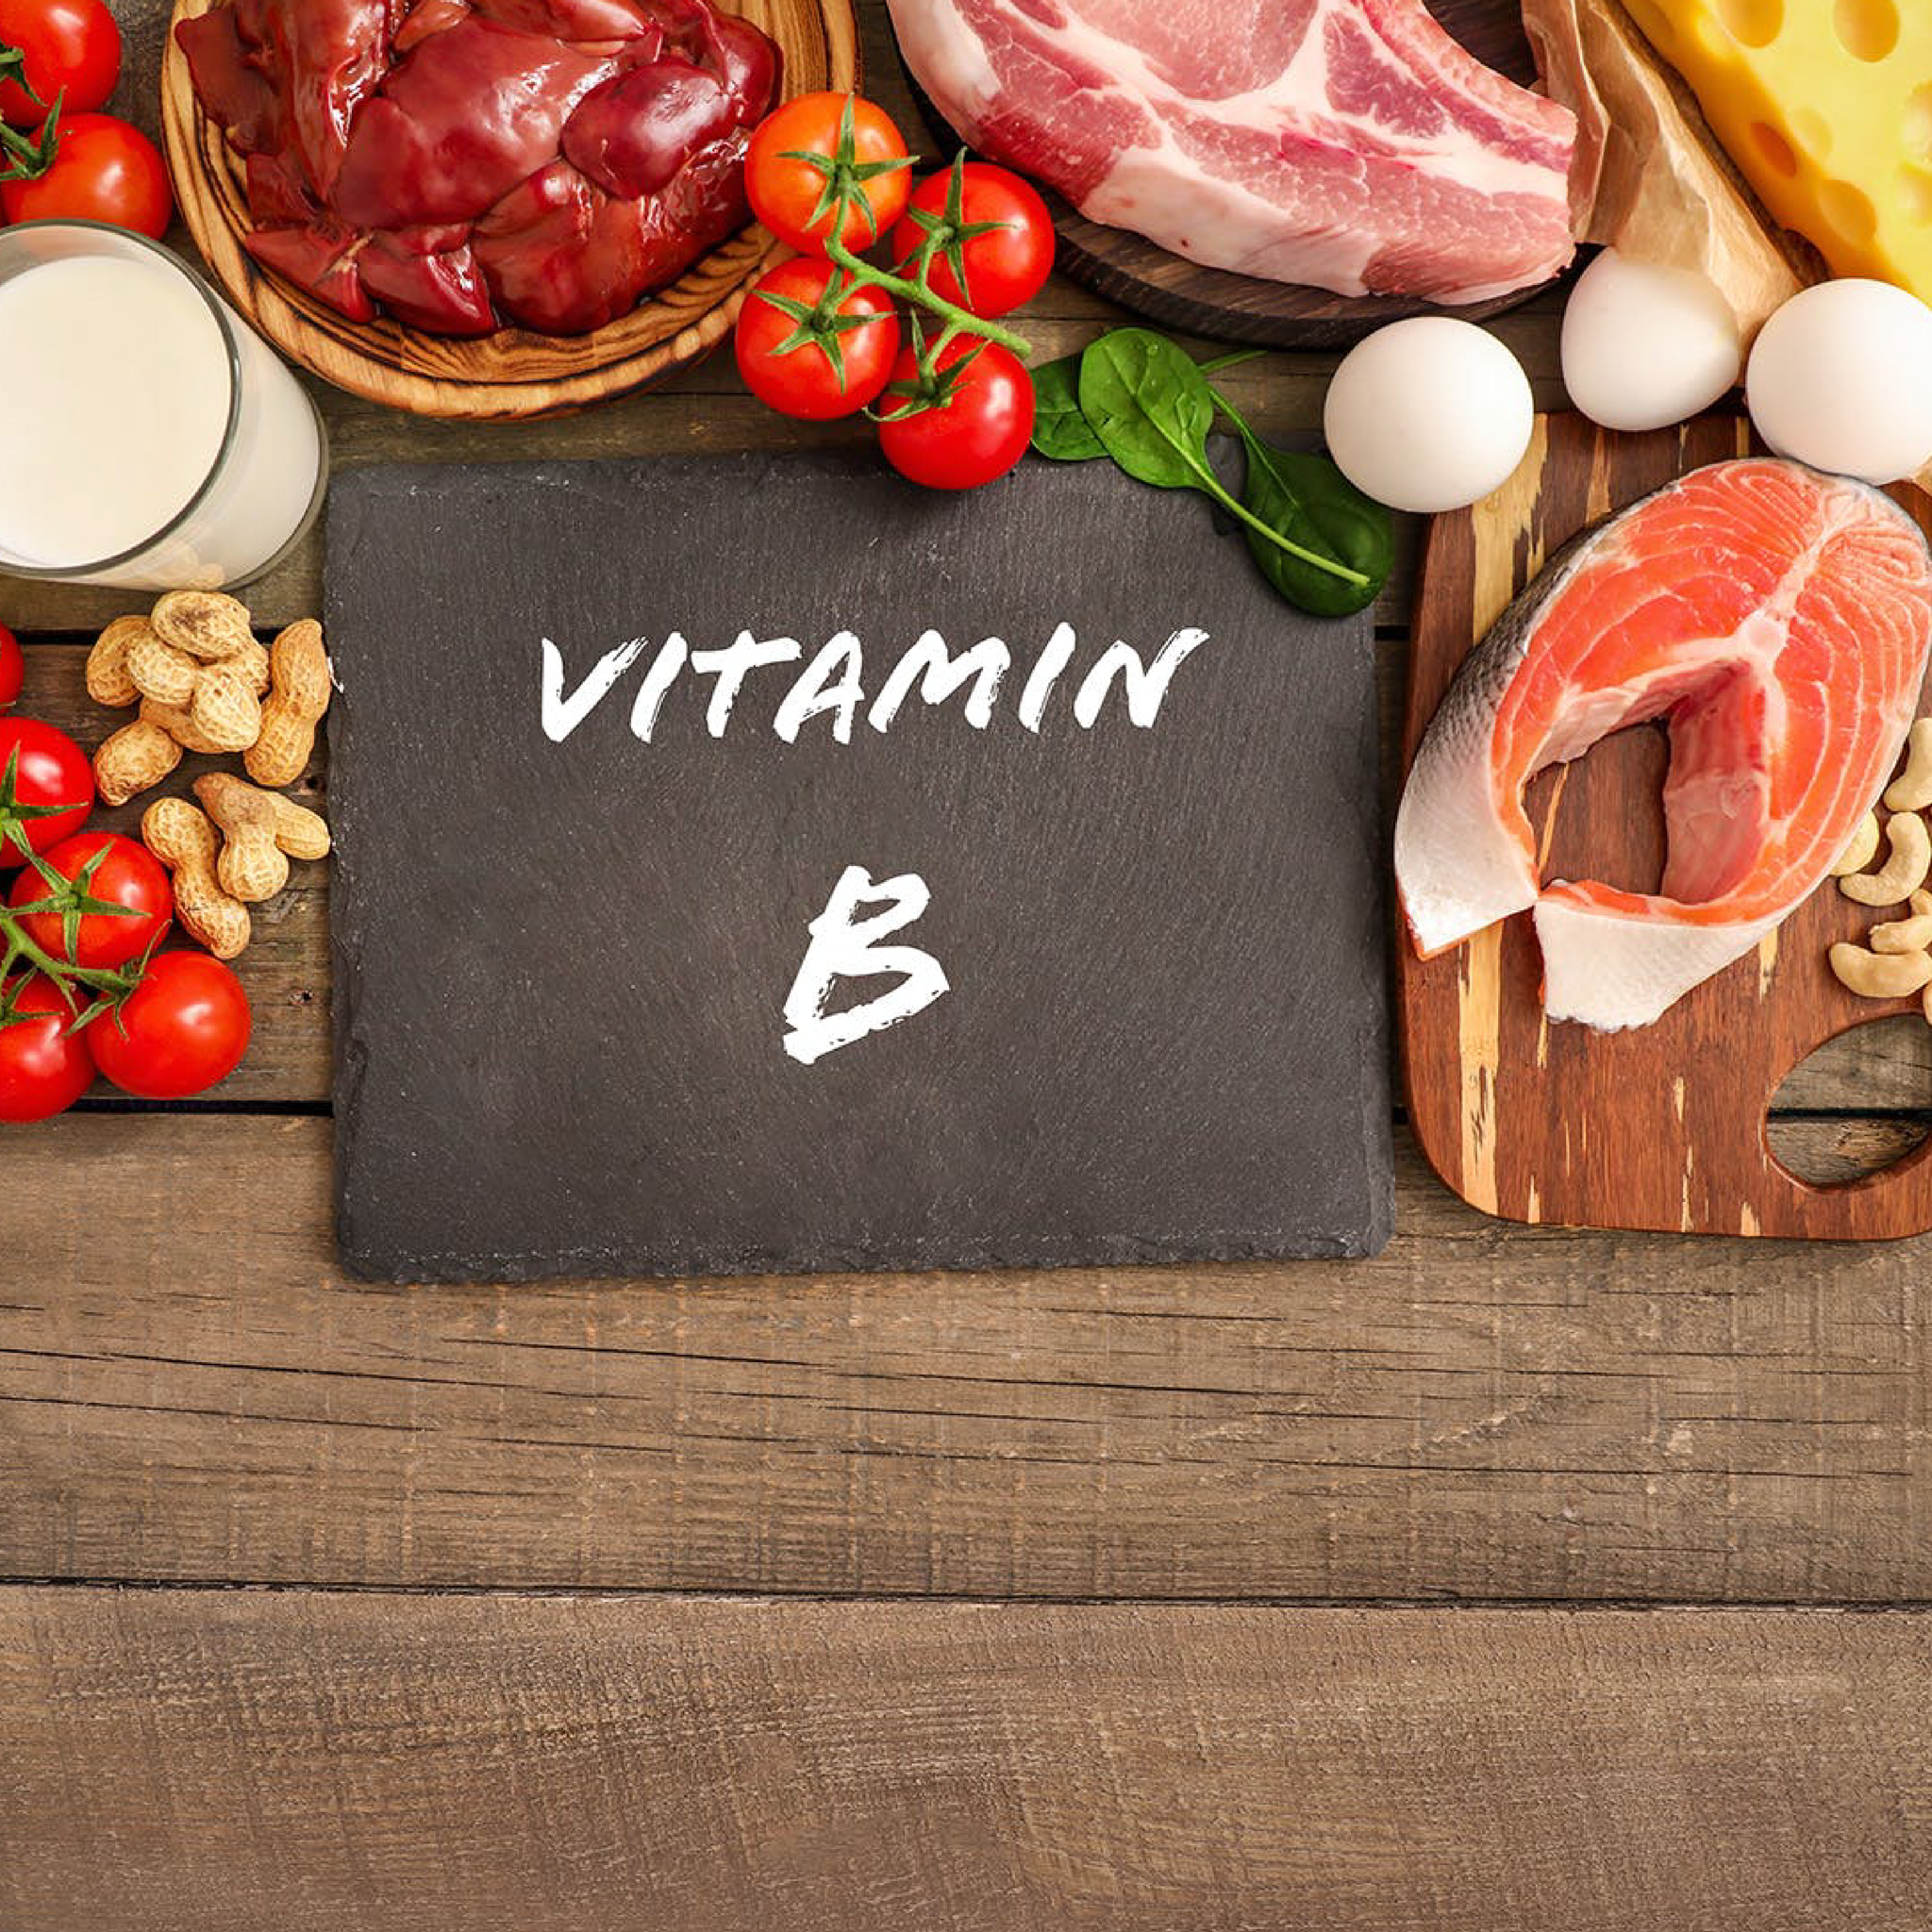 Vitamin B Có Tác Dụng Gì - 1001 Công Dụng Hữu Ích Có Thể Bạn Chưa Biết